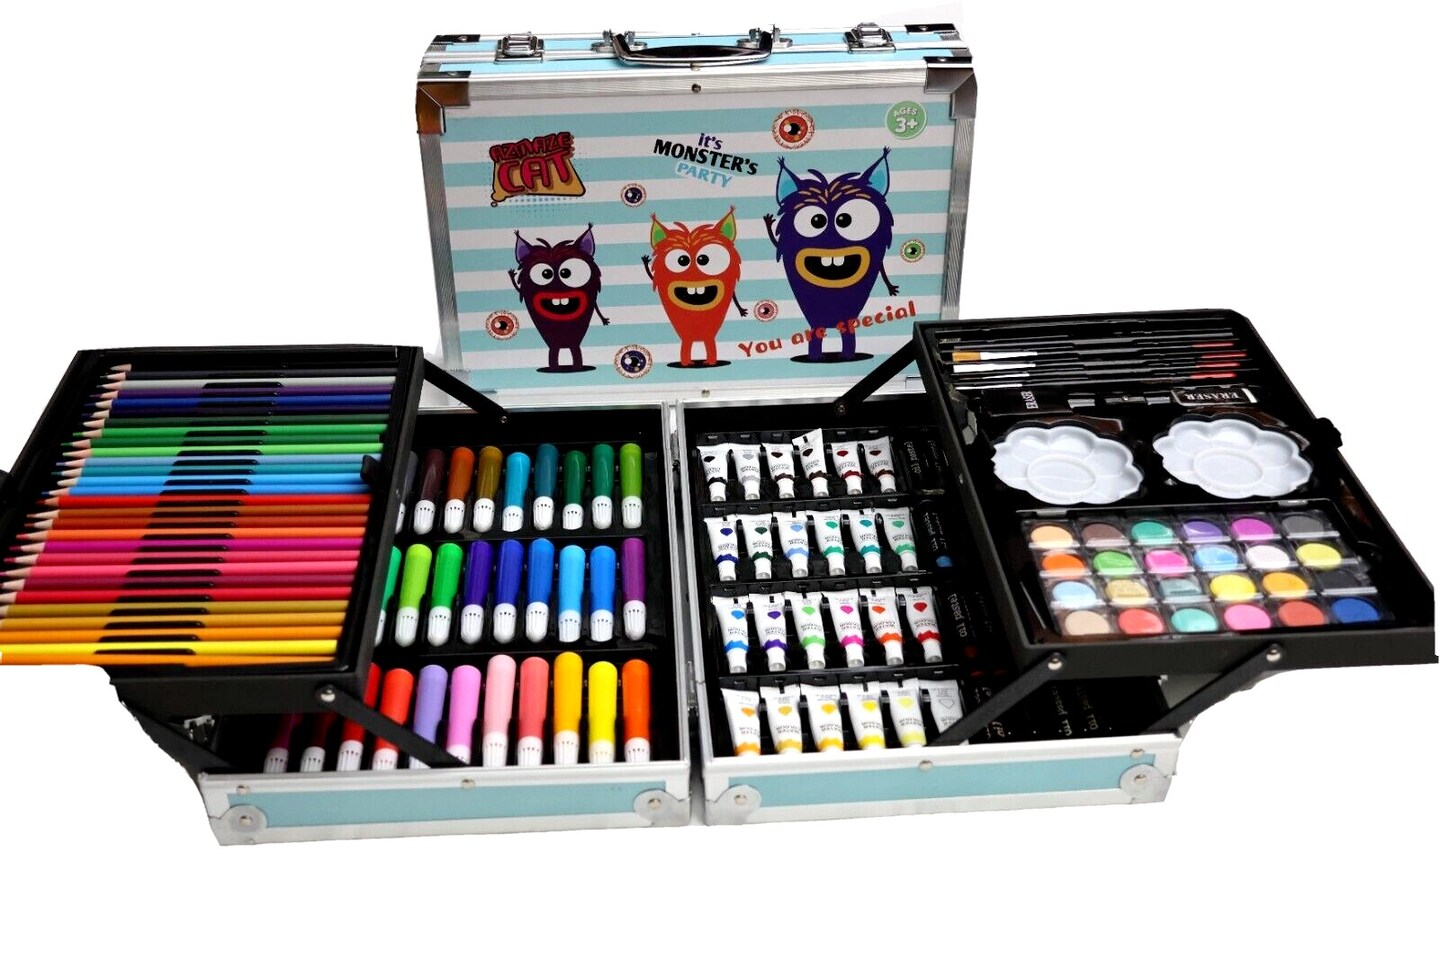 Crayola® 12 Color Half-Size Colored Pencil Set